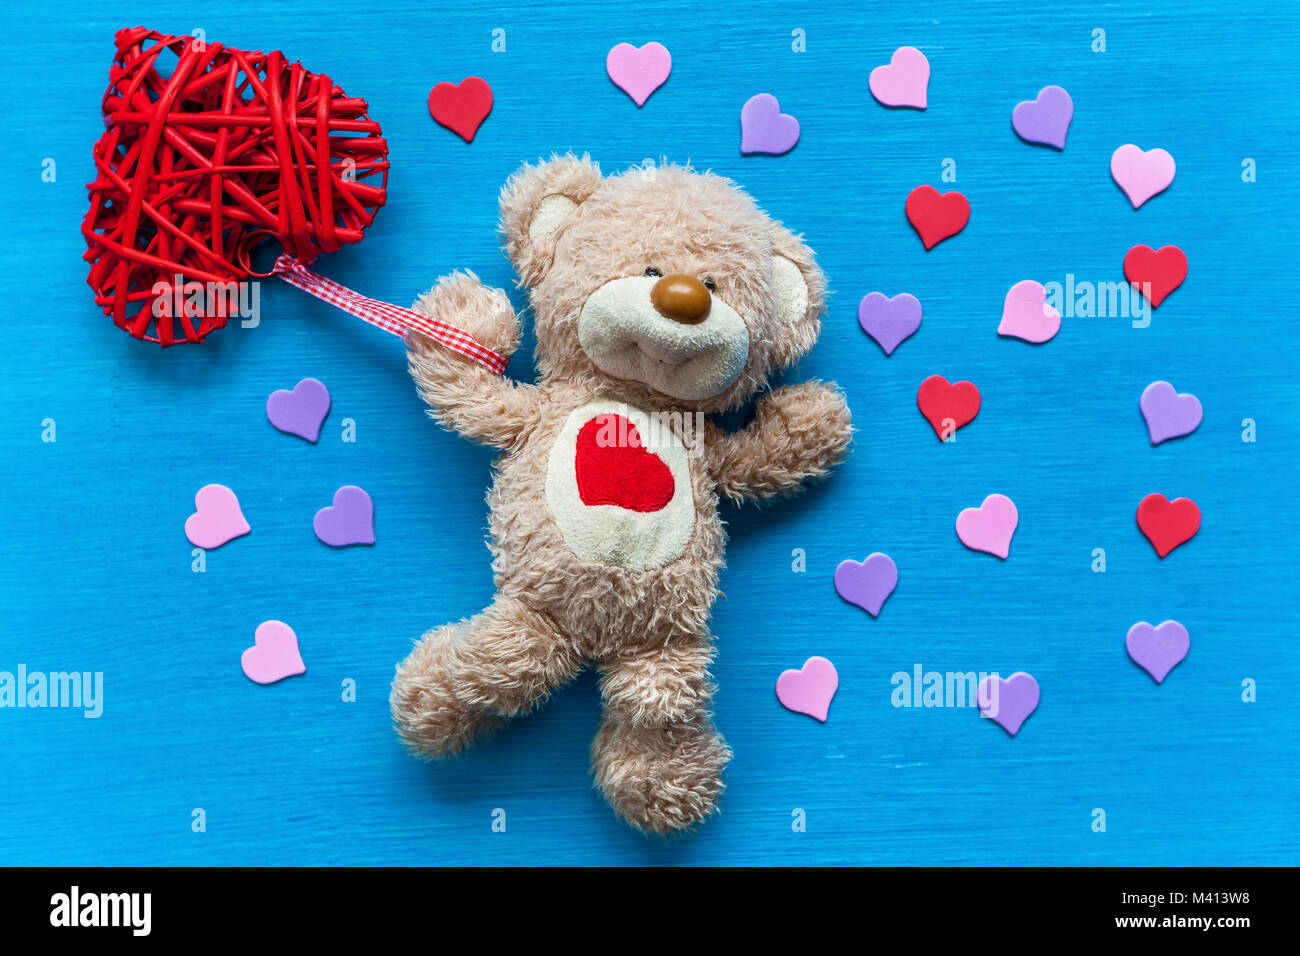 Beige, Teddybär liegt auf einem türkisfarbenen Tisch und hält ein Herz. Bär  mit Herz Stockfotografie - Alamy